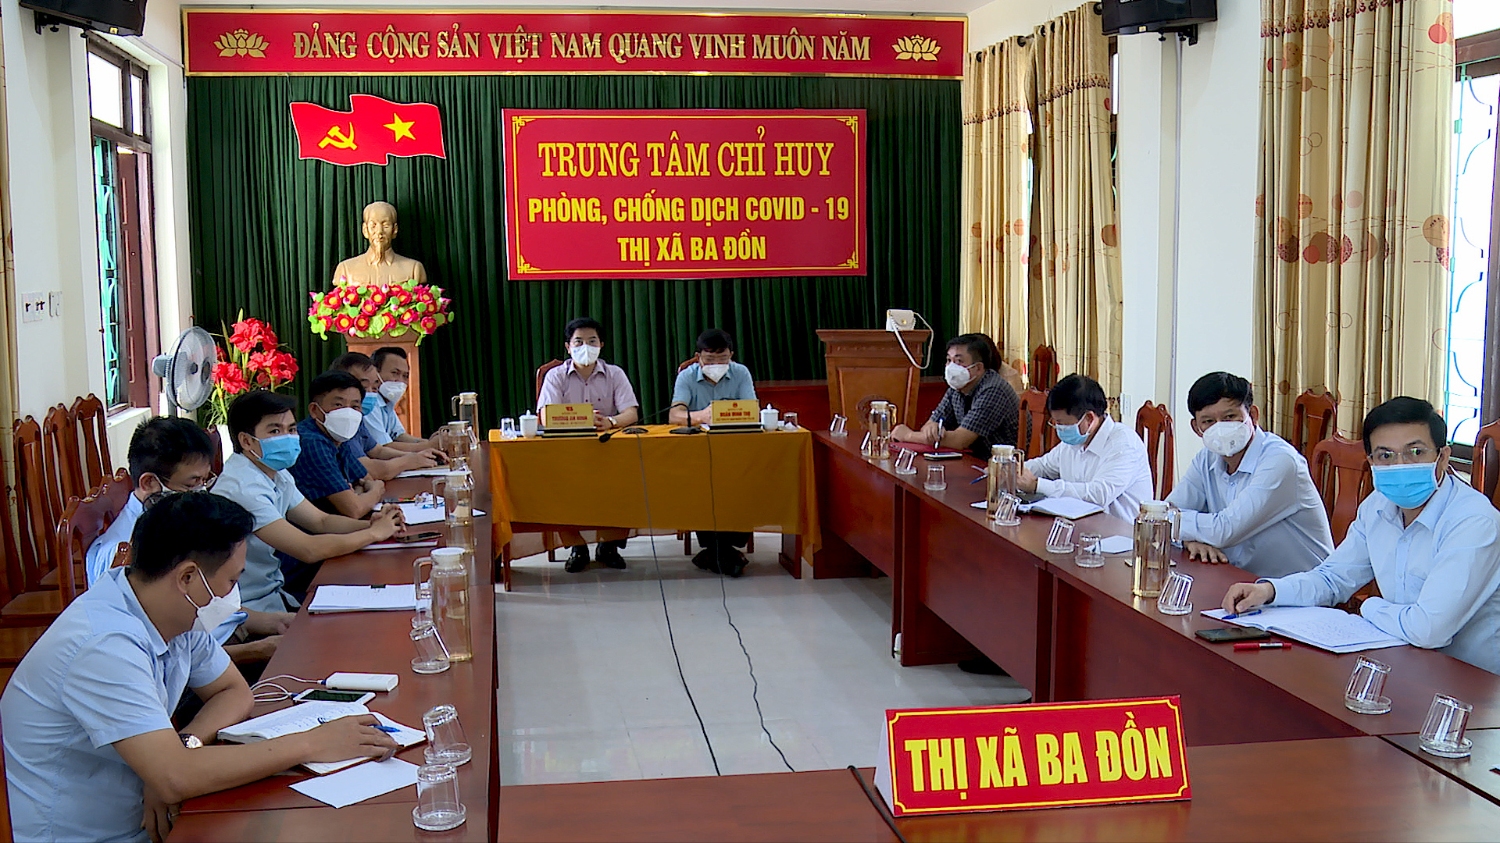 Hội nghị trực tuyến điểm cầu thị xã Ba Đồn